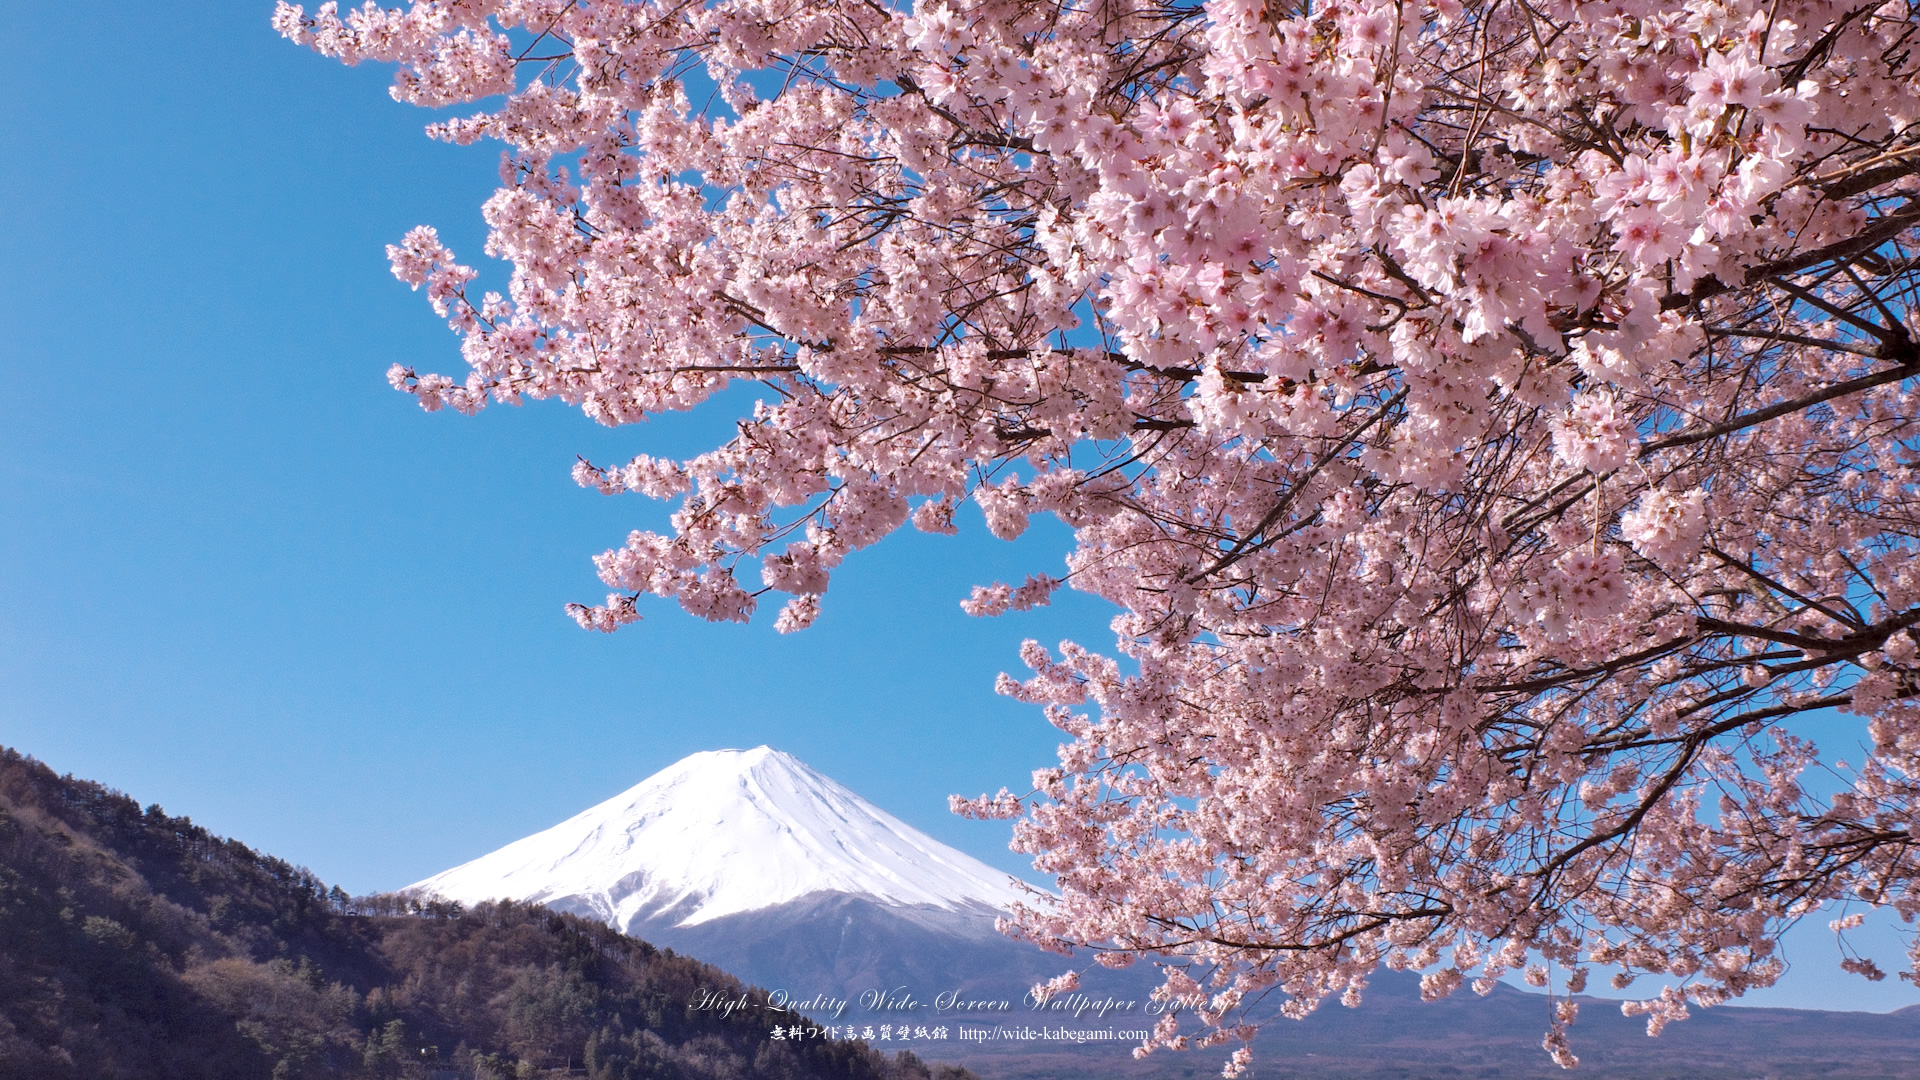 画像 春といえば桜 壁紙にしたいほど綺麗な桜の画像まとめ 高画質 Naver まとめ